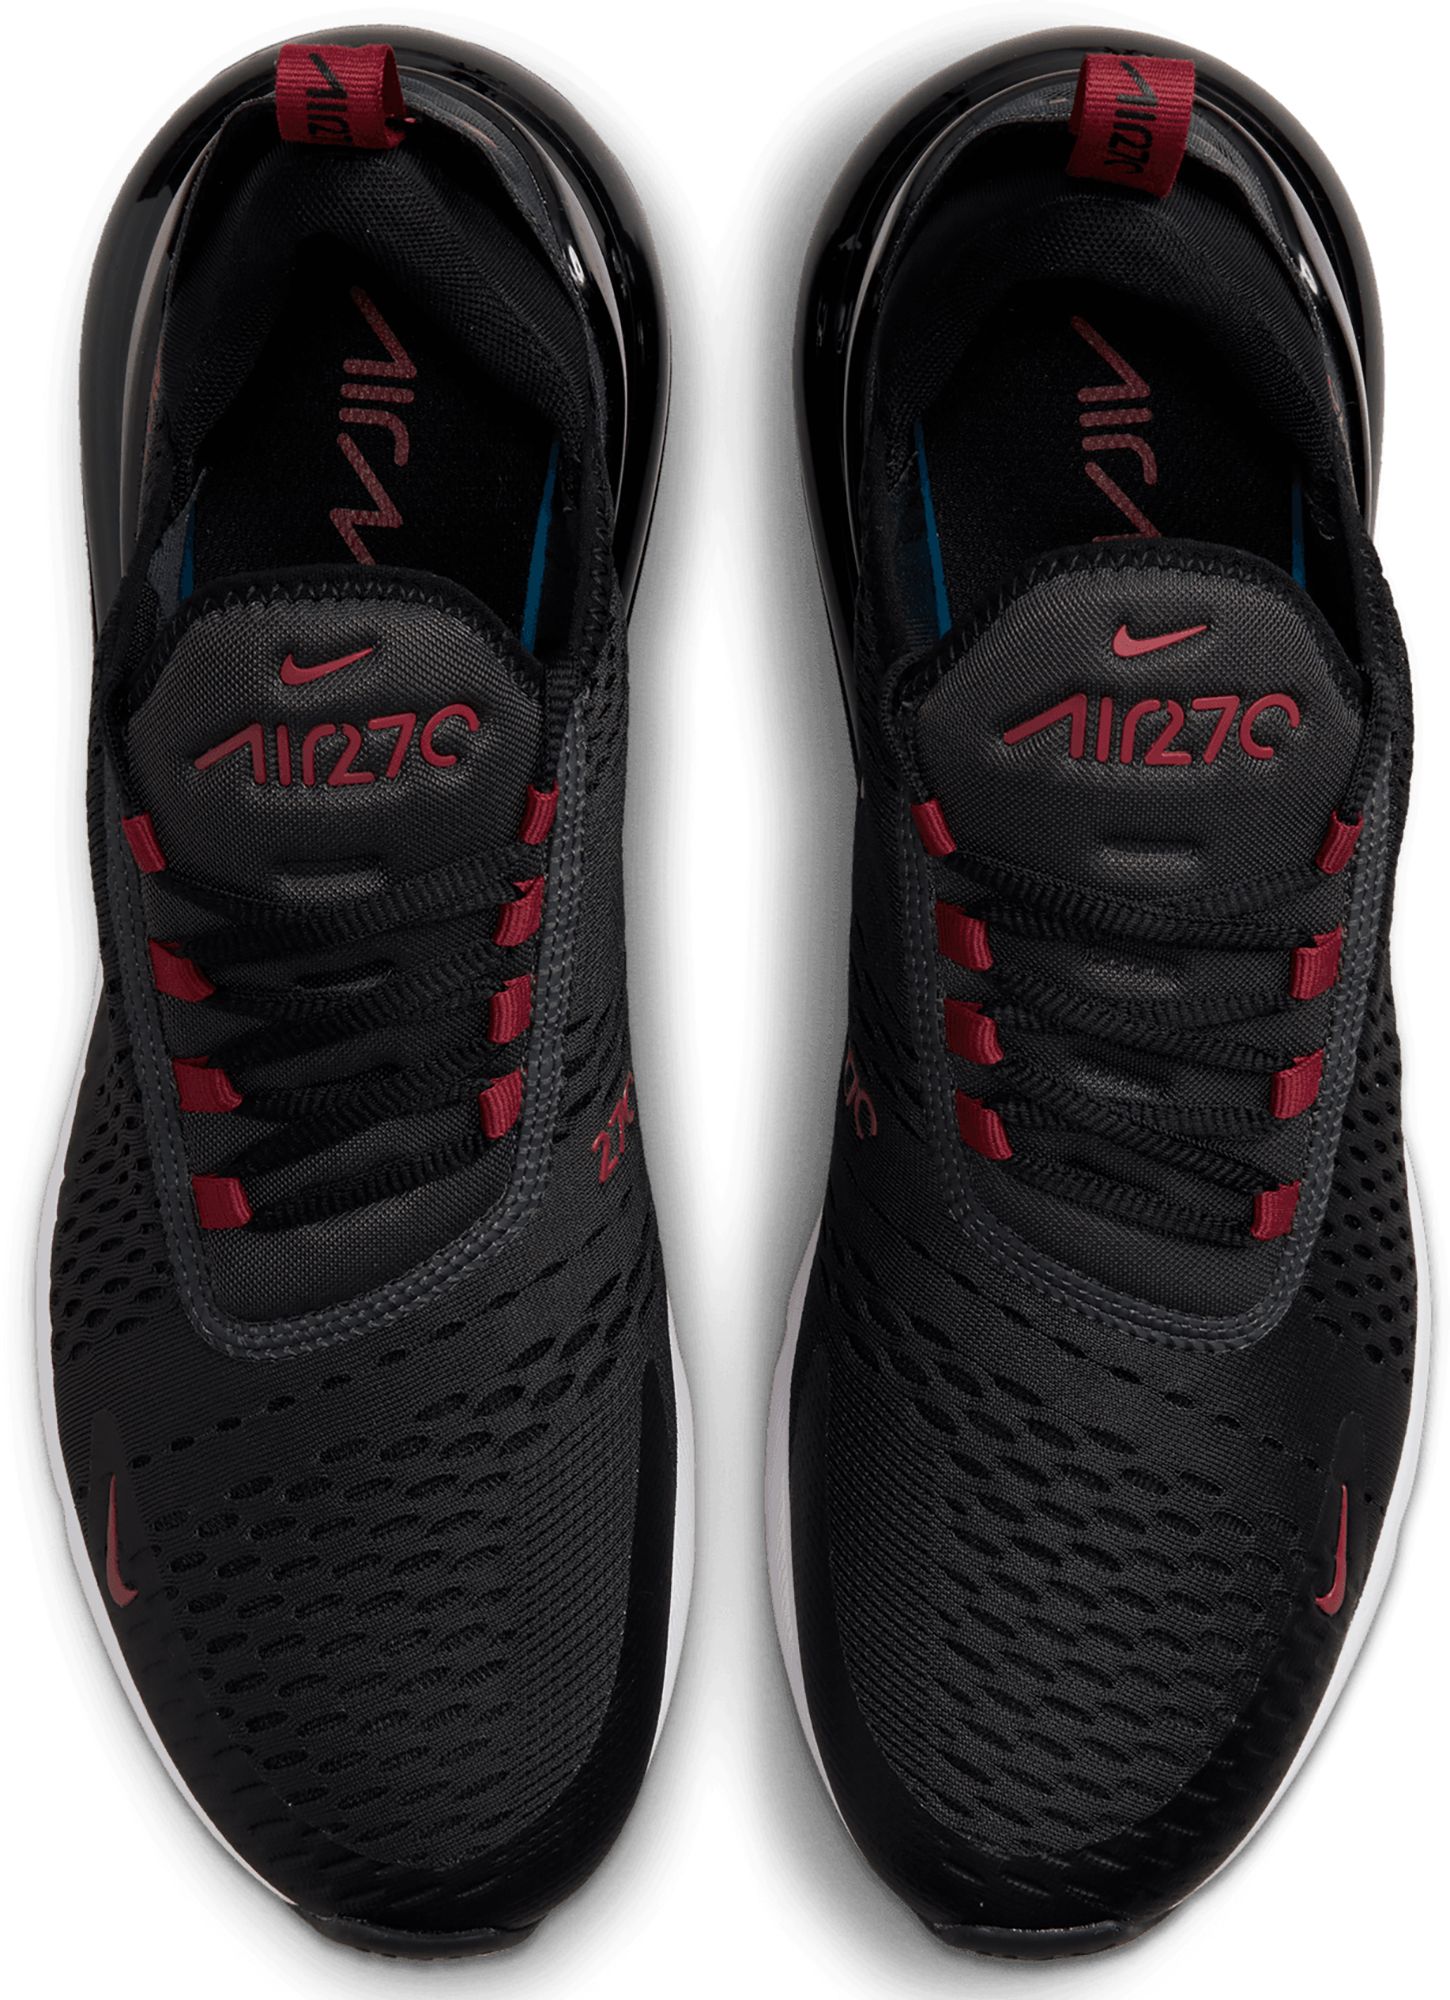 red black air max 270